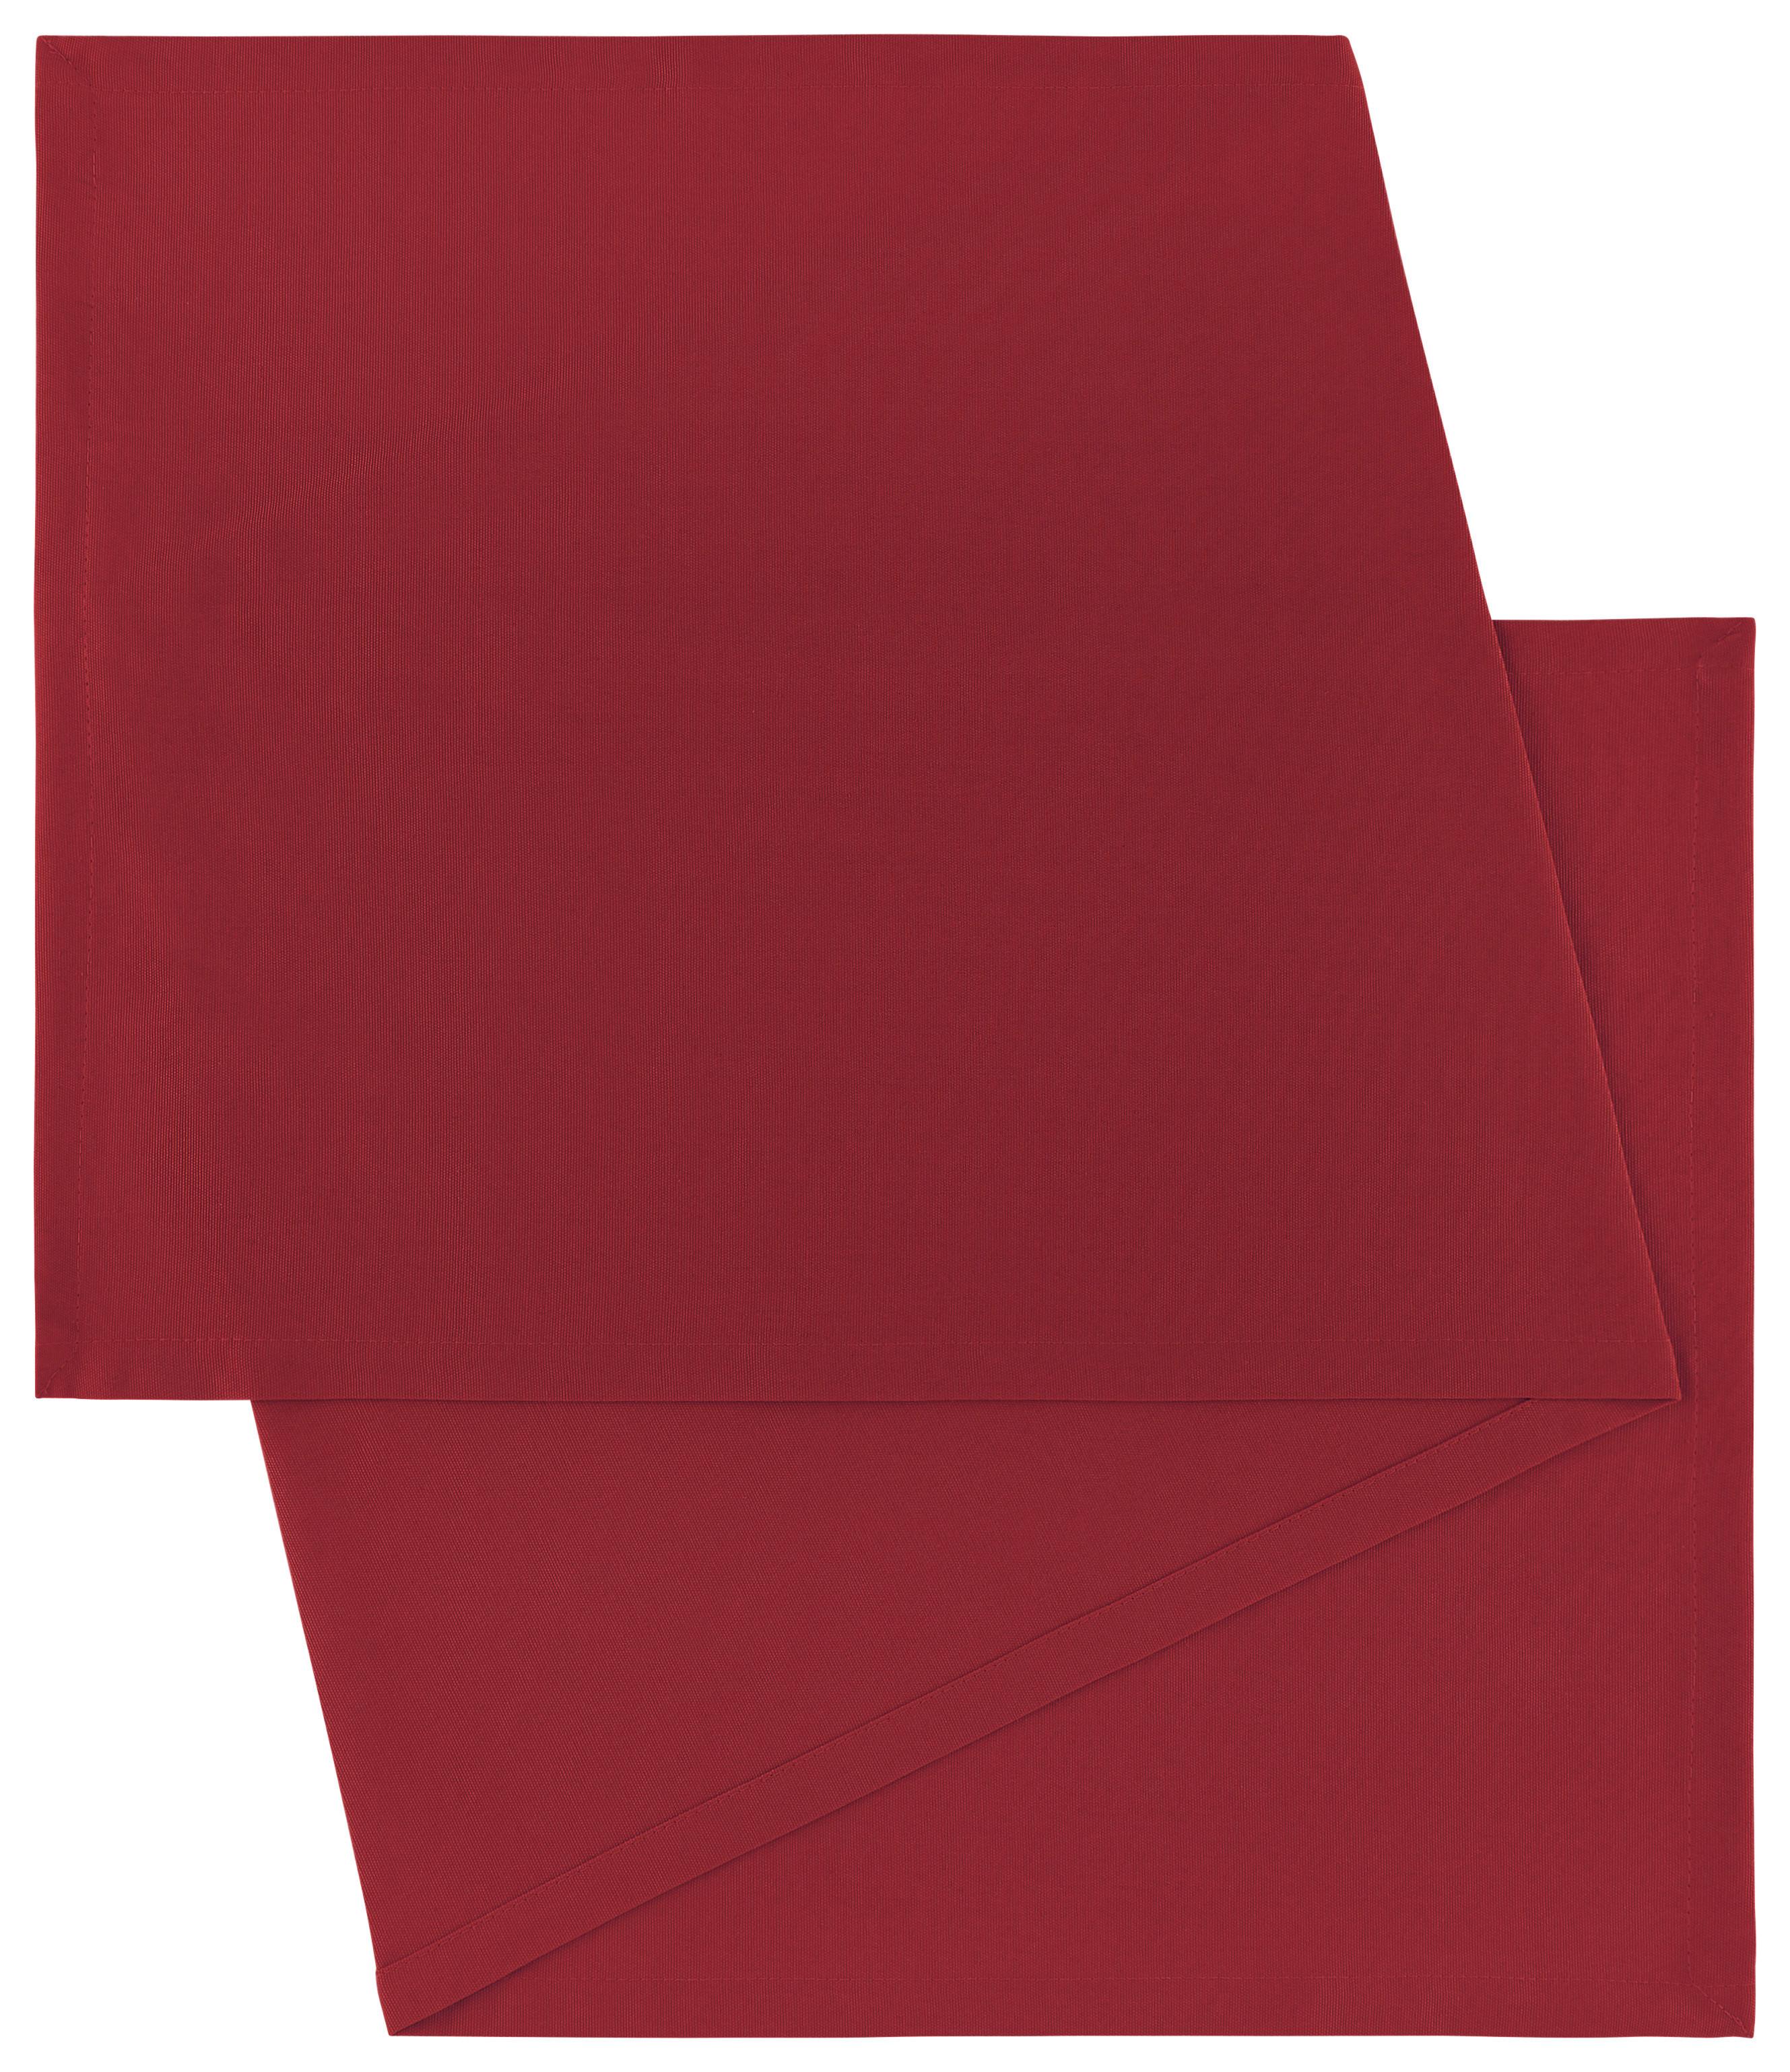 Nadprt Steffi - rdeča, tekstil (45/150cm) - Modern Living